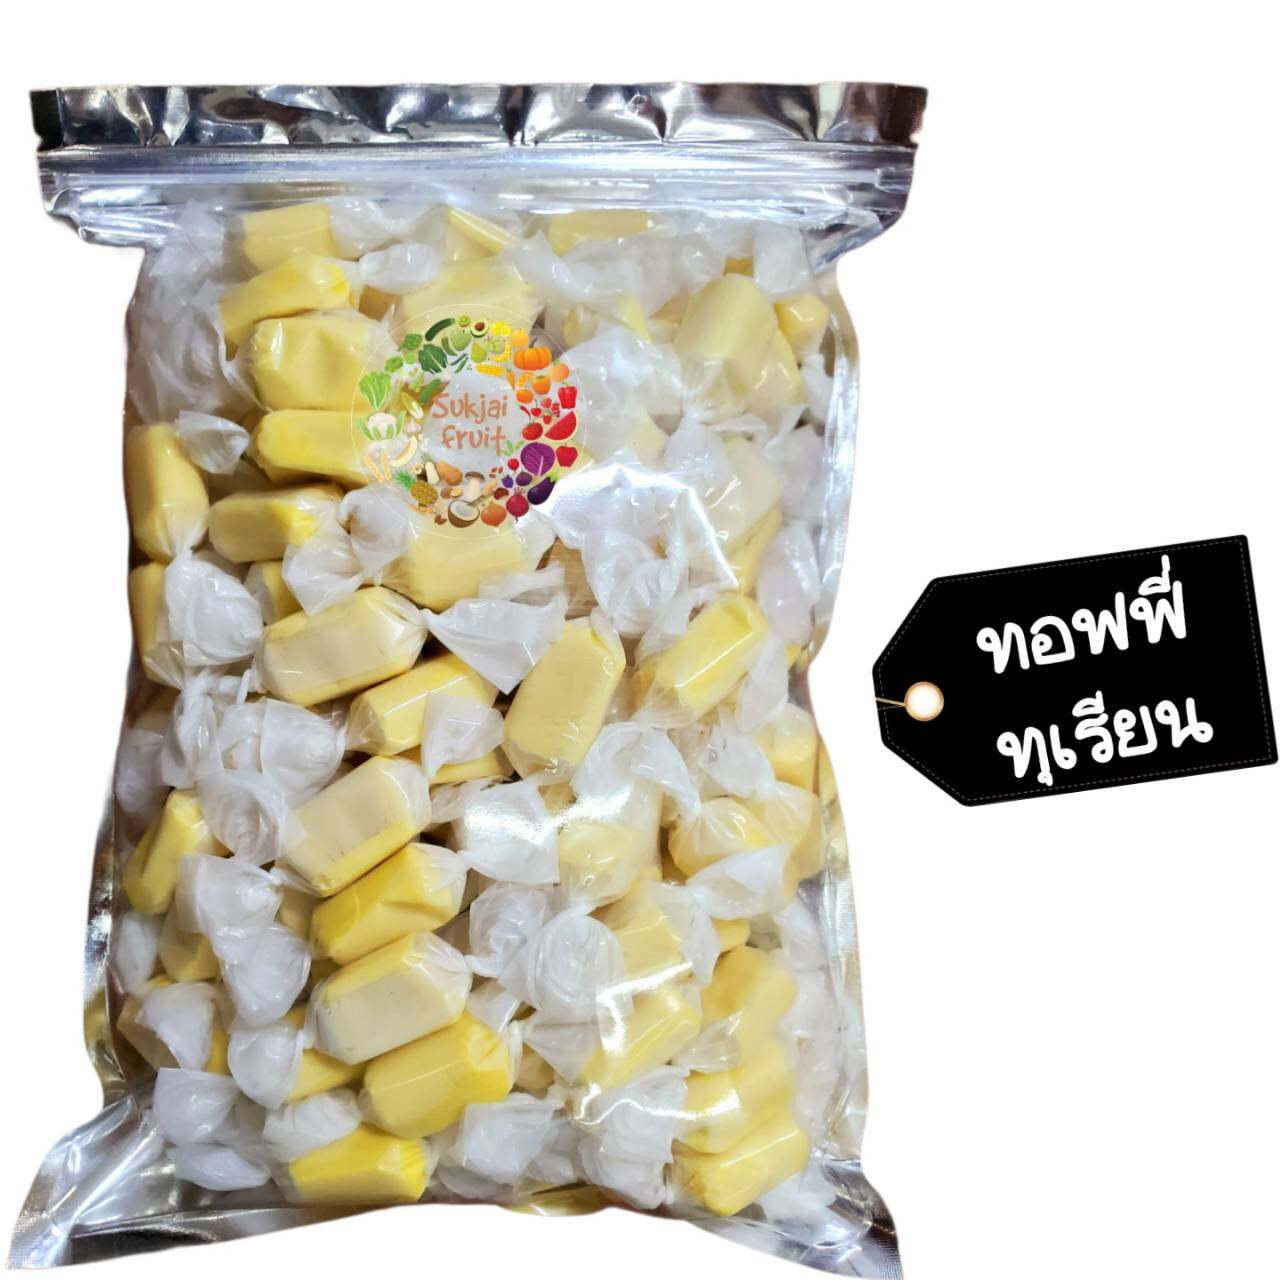 ทอฟฟี่ ทุเรียน 125 กรัม   - Durian milk toffy 125 g  - Dried fruit ผลไม้ อบแห้ง ขนมไทย ขนม OTOP บ๊วย ผลไม้อบแห้ง บ๊วย ผลไม้อบแห้ง ท๊อฟฟี่ ขนม ลูกอม